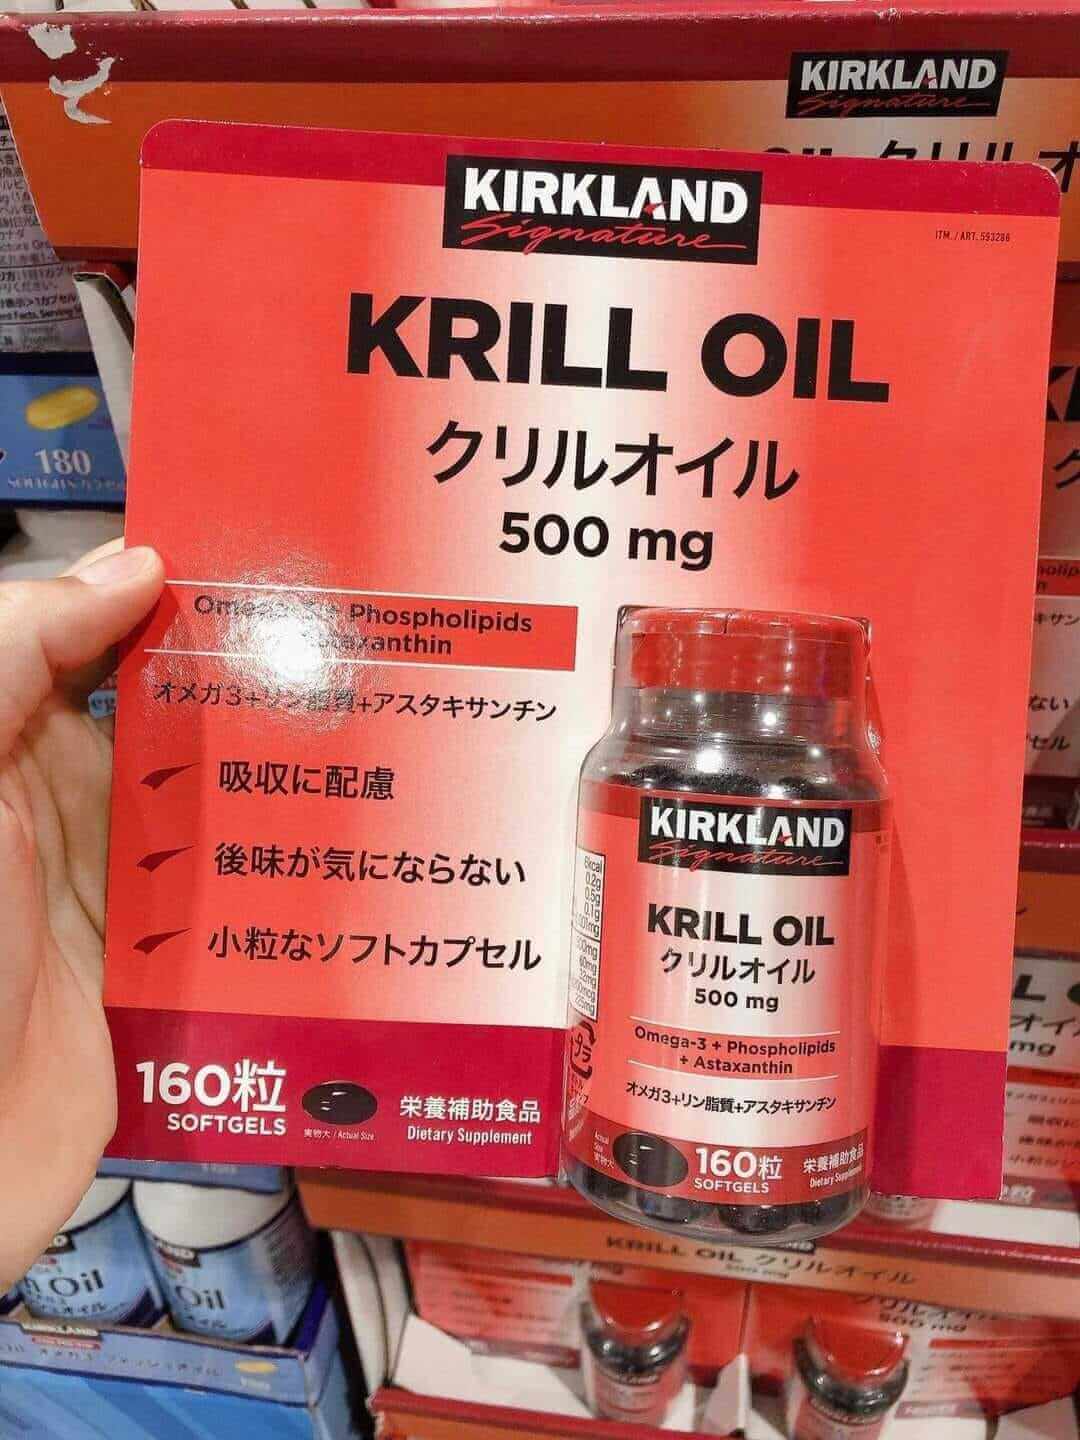 Ai nên sử dụng Krill Oil 500mg?